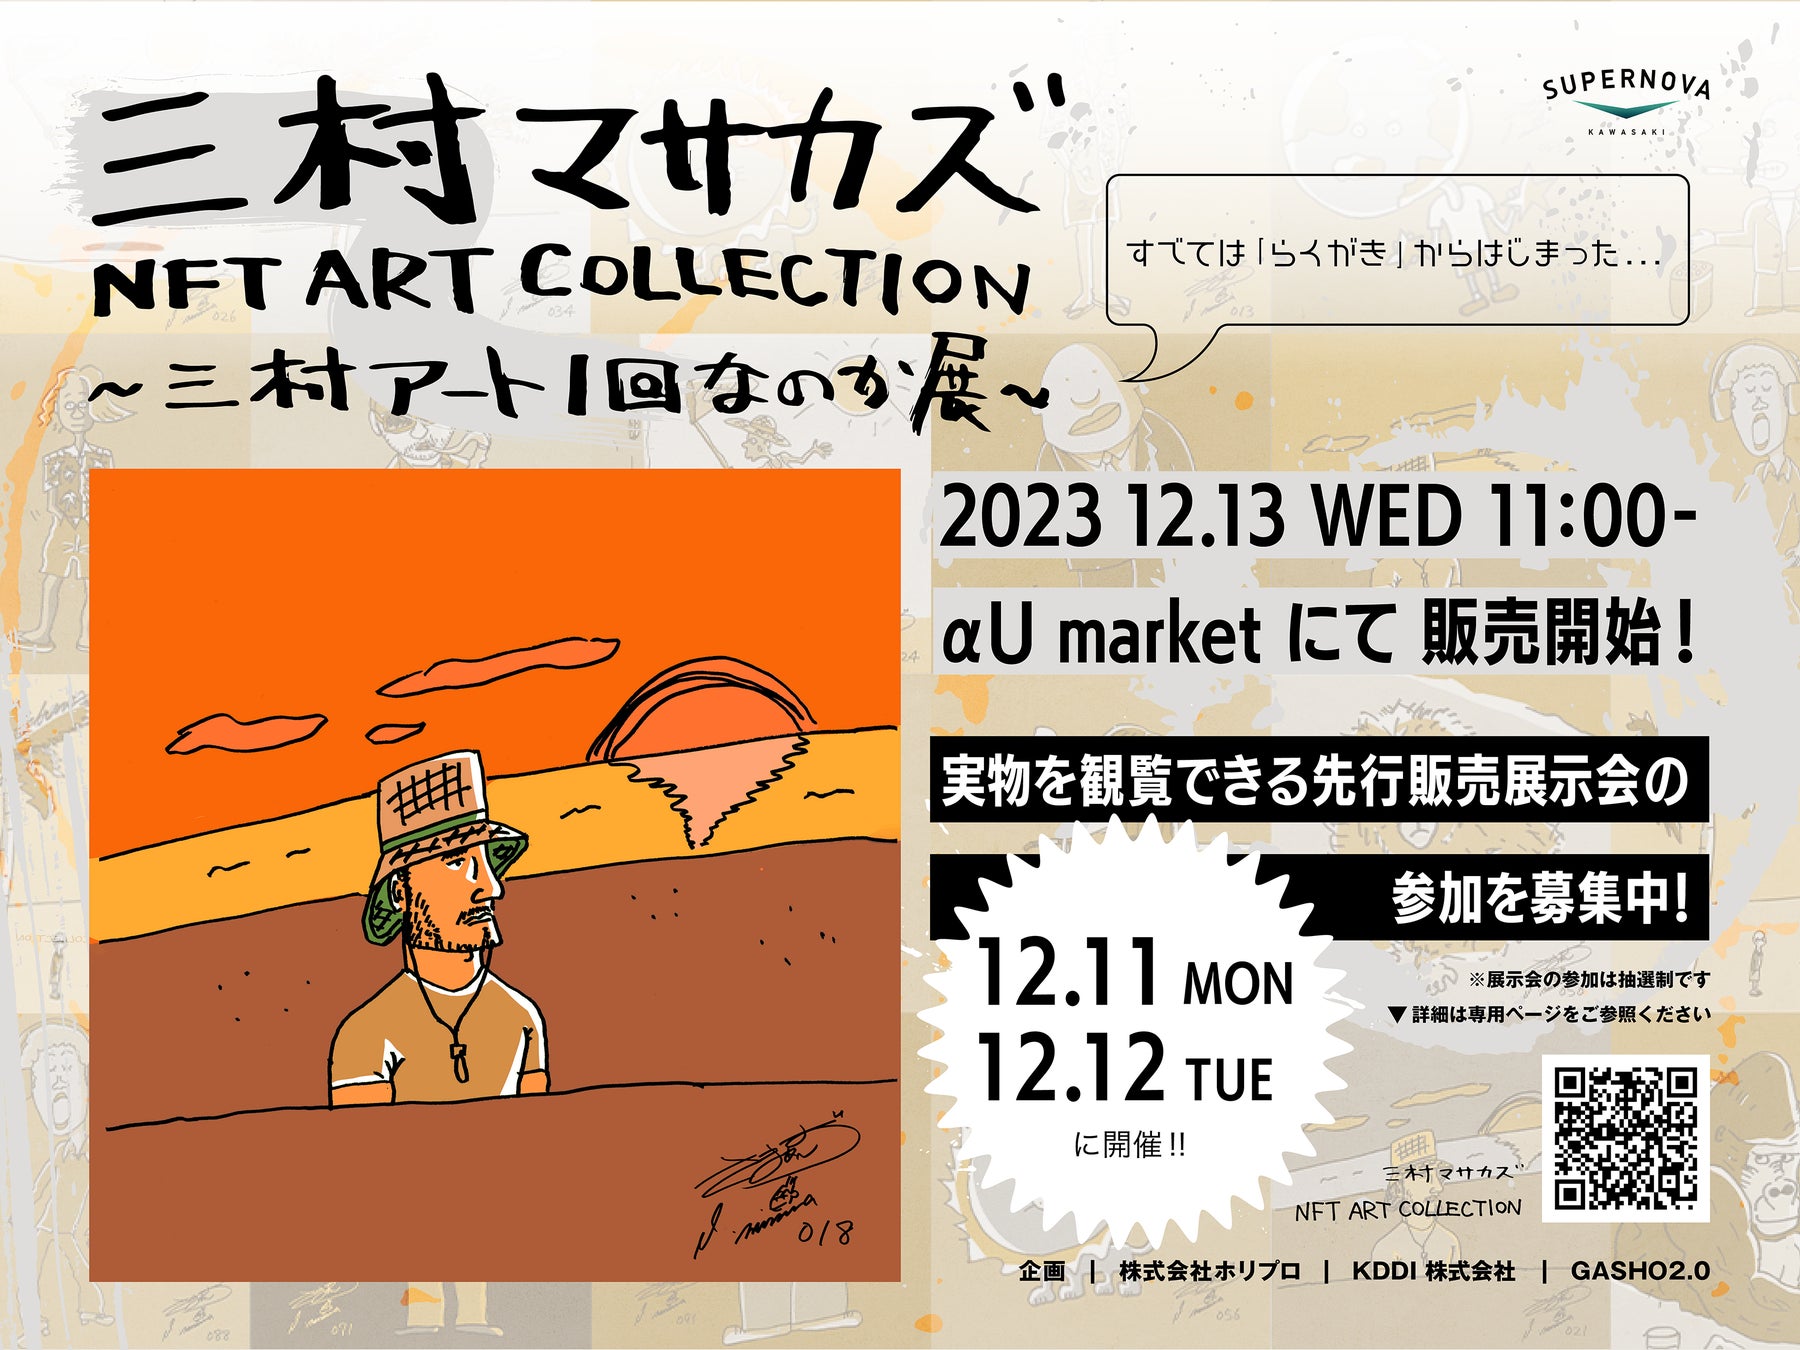 さまぁ～ず・三村マサカズ アート作品が初のNFT化 2.5次元で楽しめるMetal Canvas ArtとセットでαU marketに登場